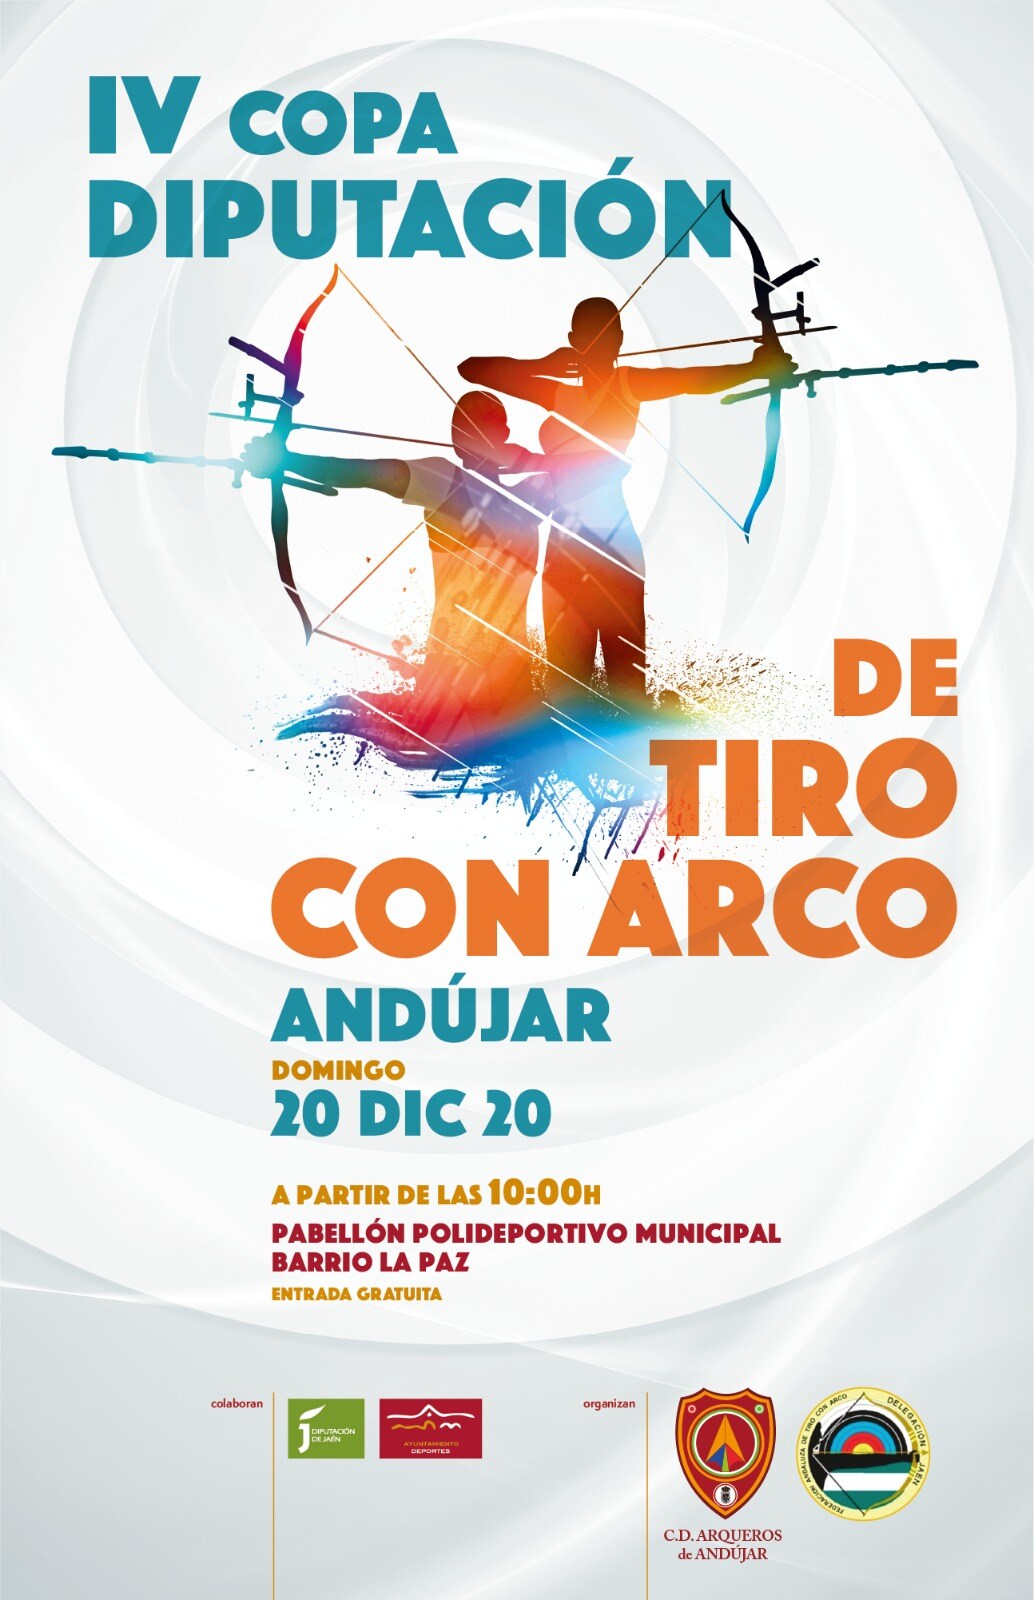 Una veintena de arqueros de Andalucía se darán cita este domingo en Andújar en la IV Copa de Diputación